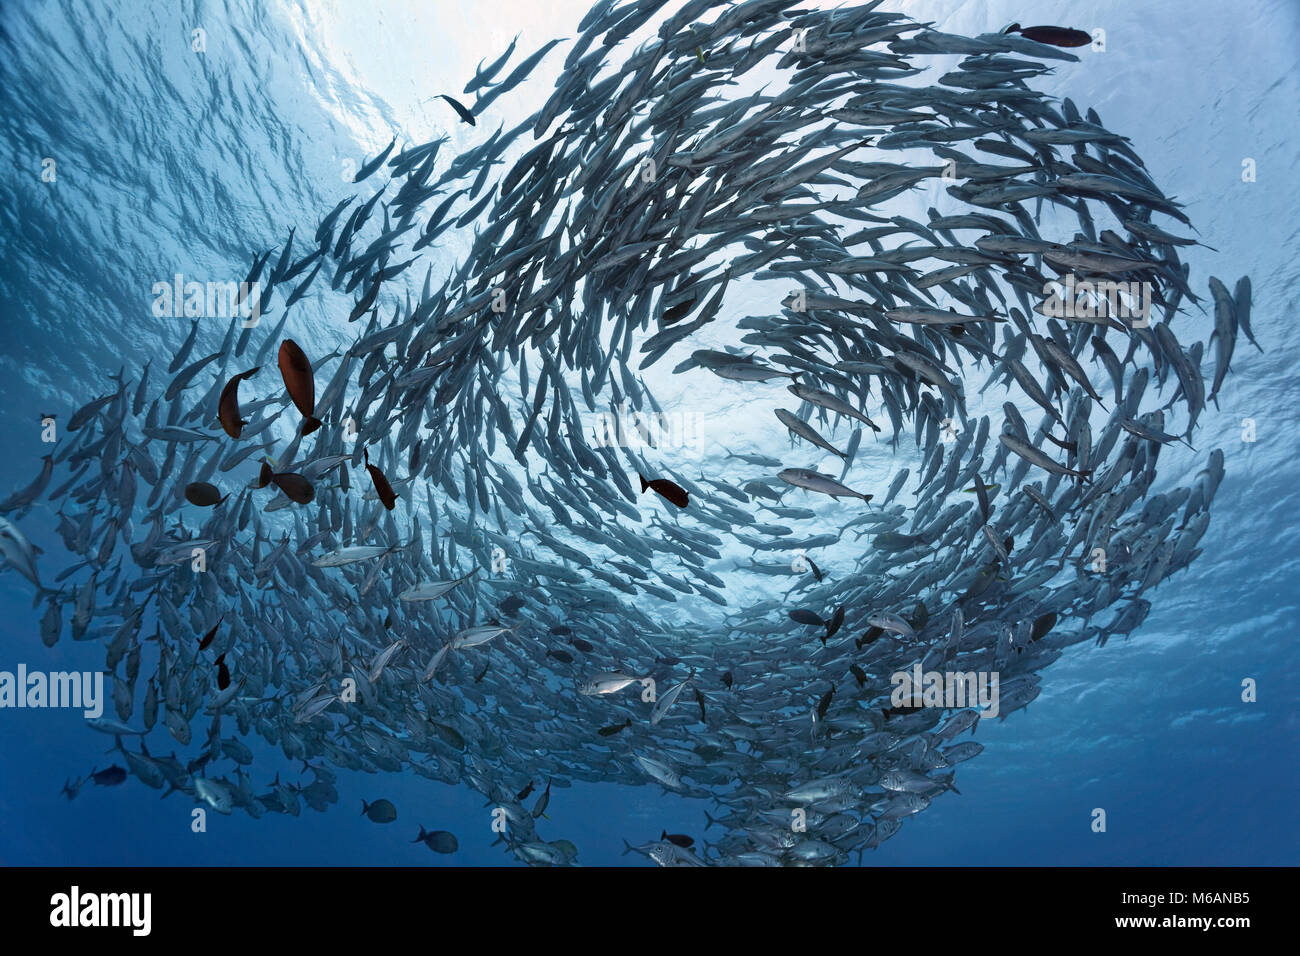 Le thon obèse de l'Essaim les carangues (Caranx sexfasciatus) dans l'eau bleue, Pacifique, Polynésie Française Banque D'Images